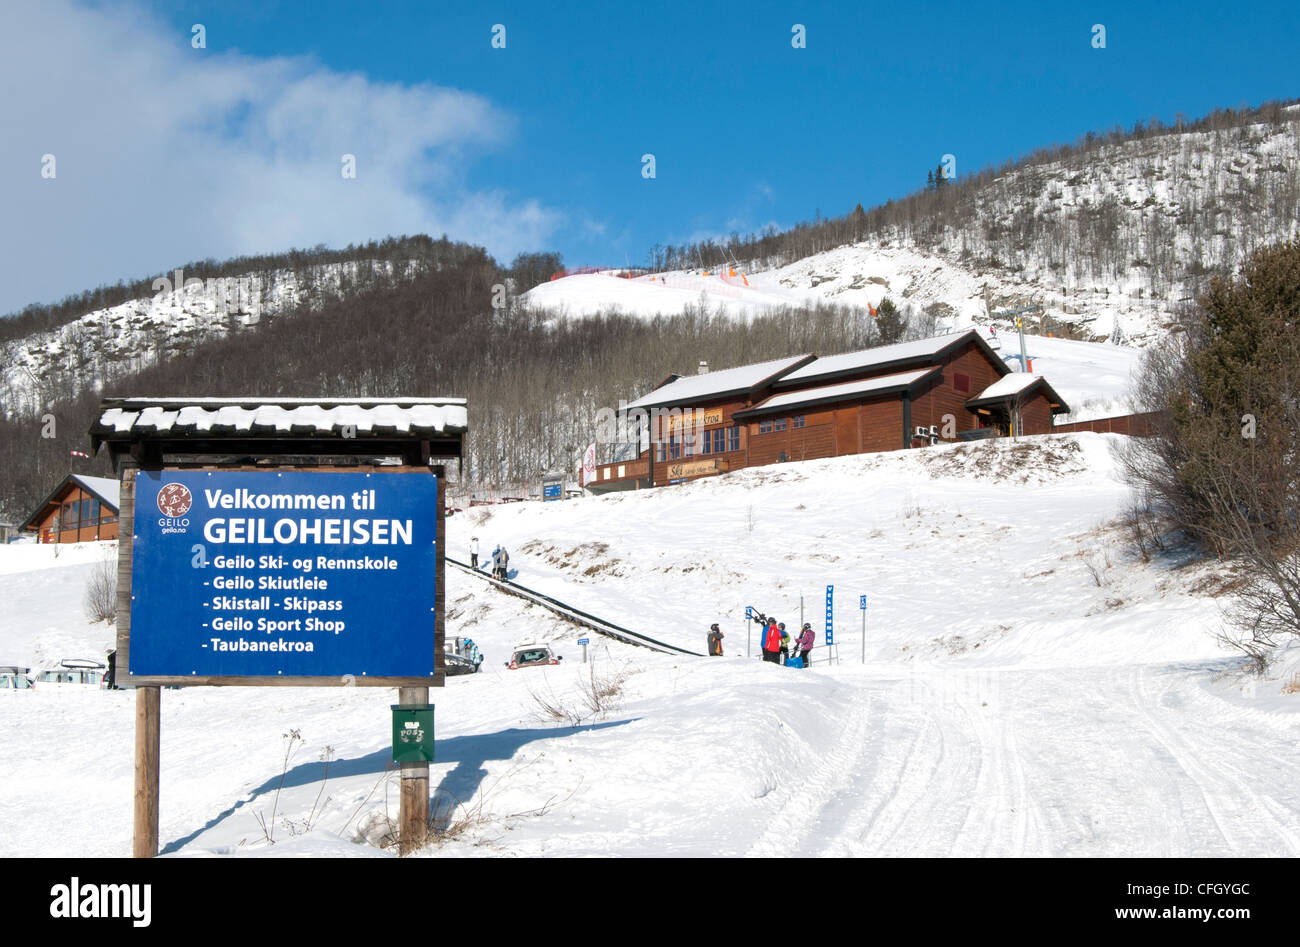 Geiloheisen ski lift, Geilo, Norway Stock Photo